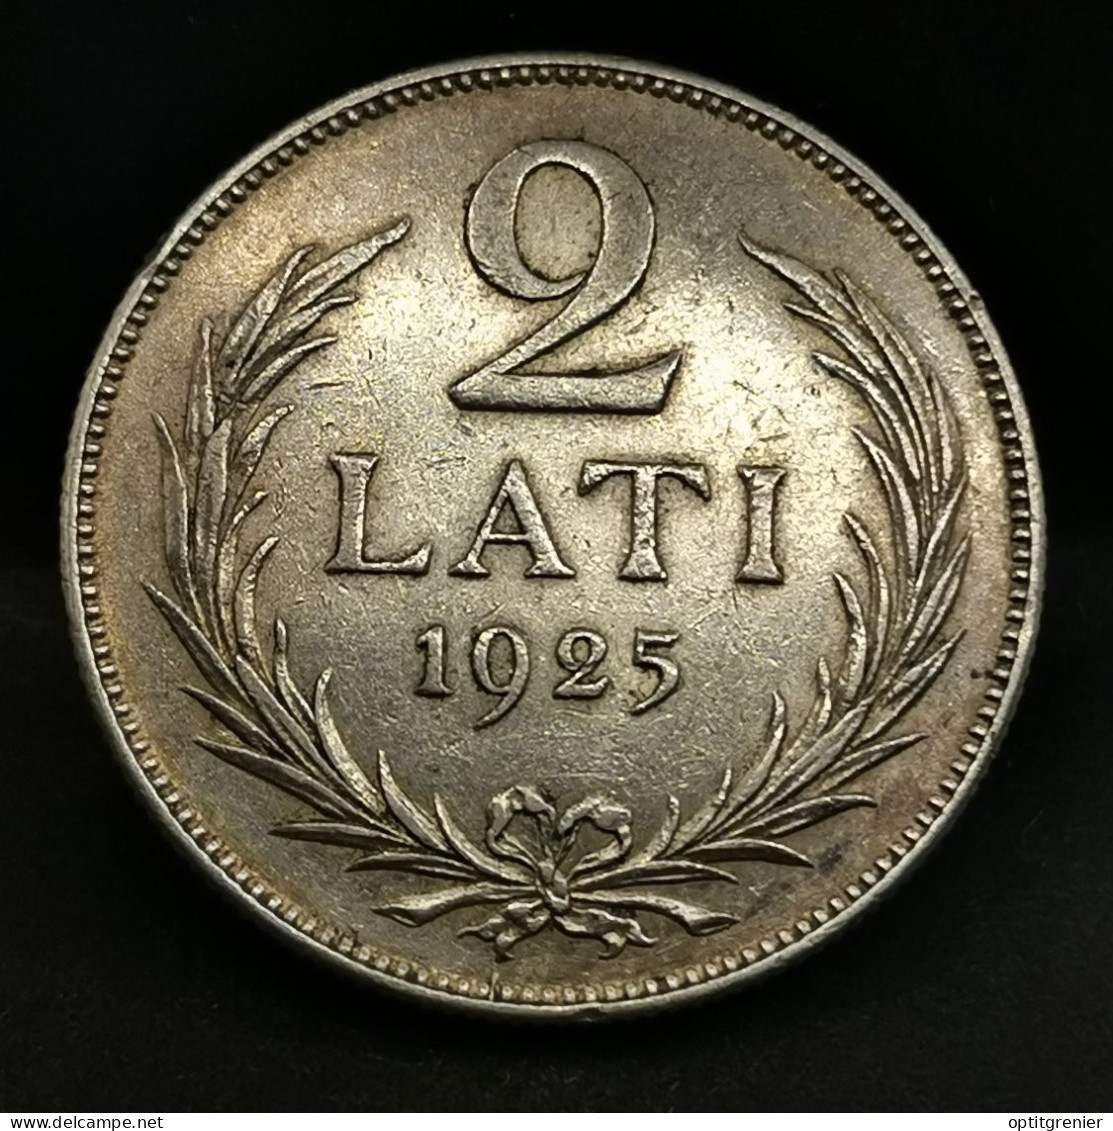 2 LATI 1925 ARGENT LETTONIE / SILVER - Lettonia